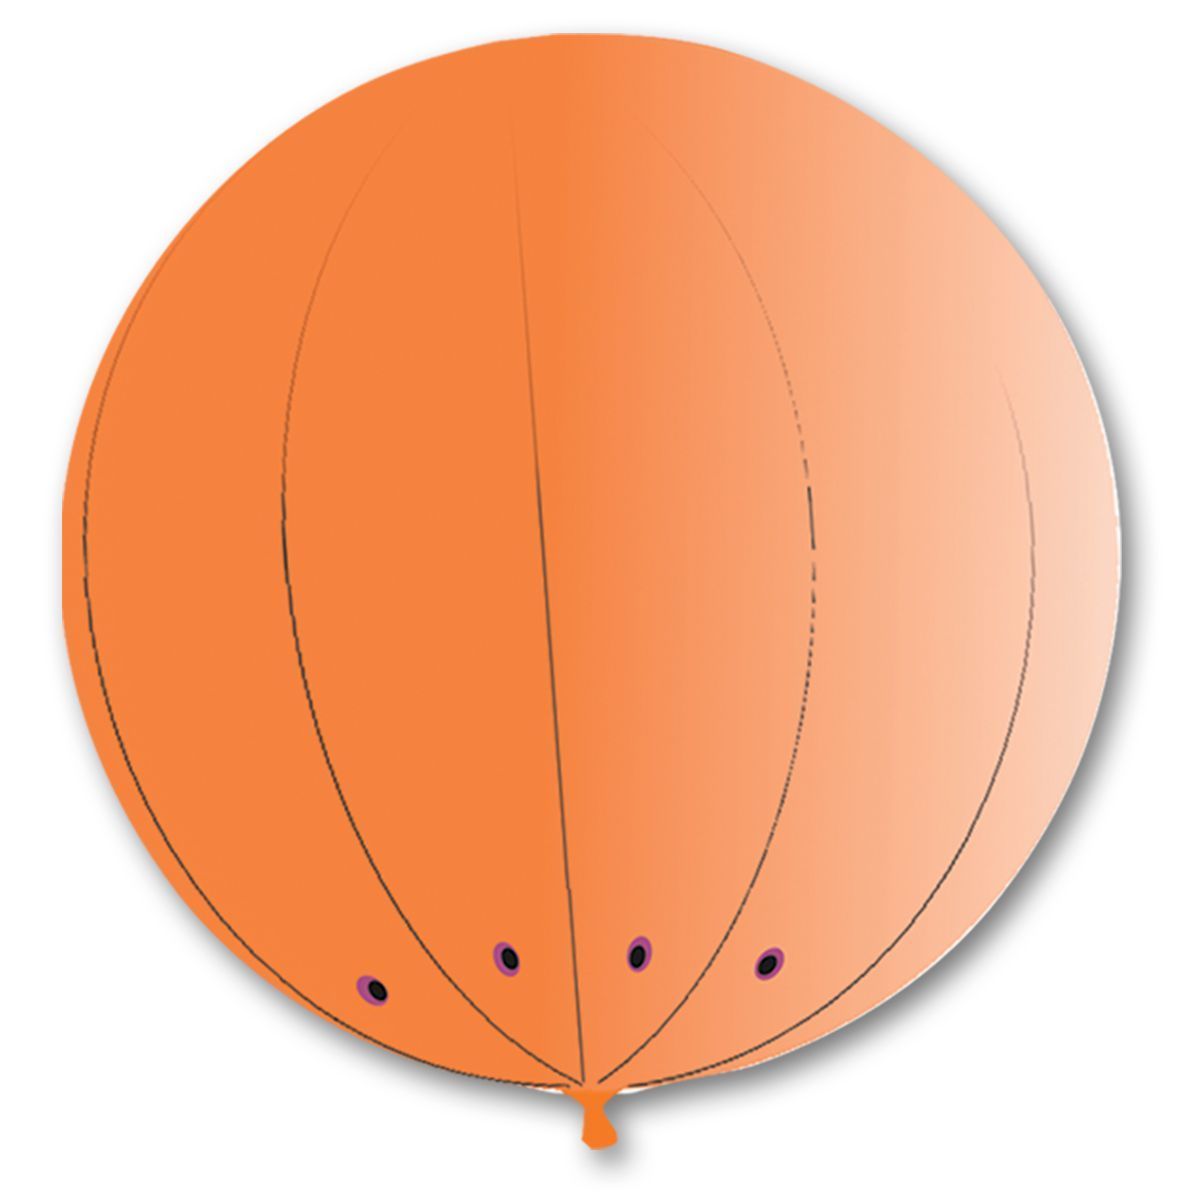 1109-0400 Гигант сфера 2,1 м оранжевый/G